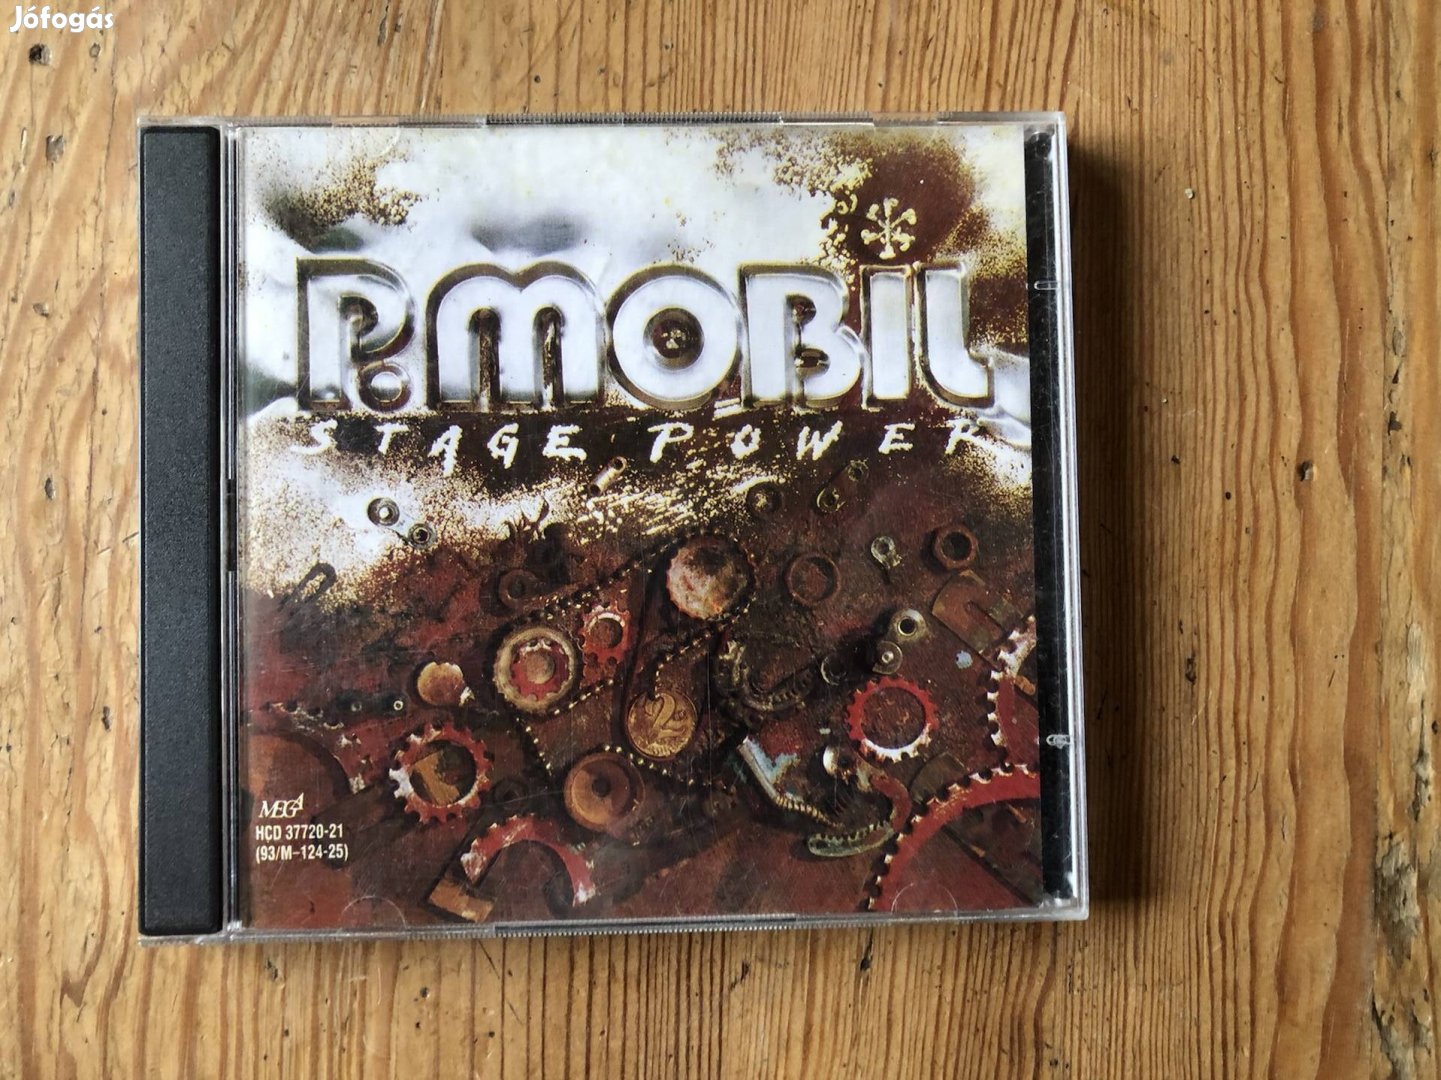 P mobil Stage power album, csak egyik CD van meg,ezért 2000 ft